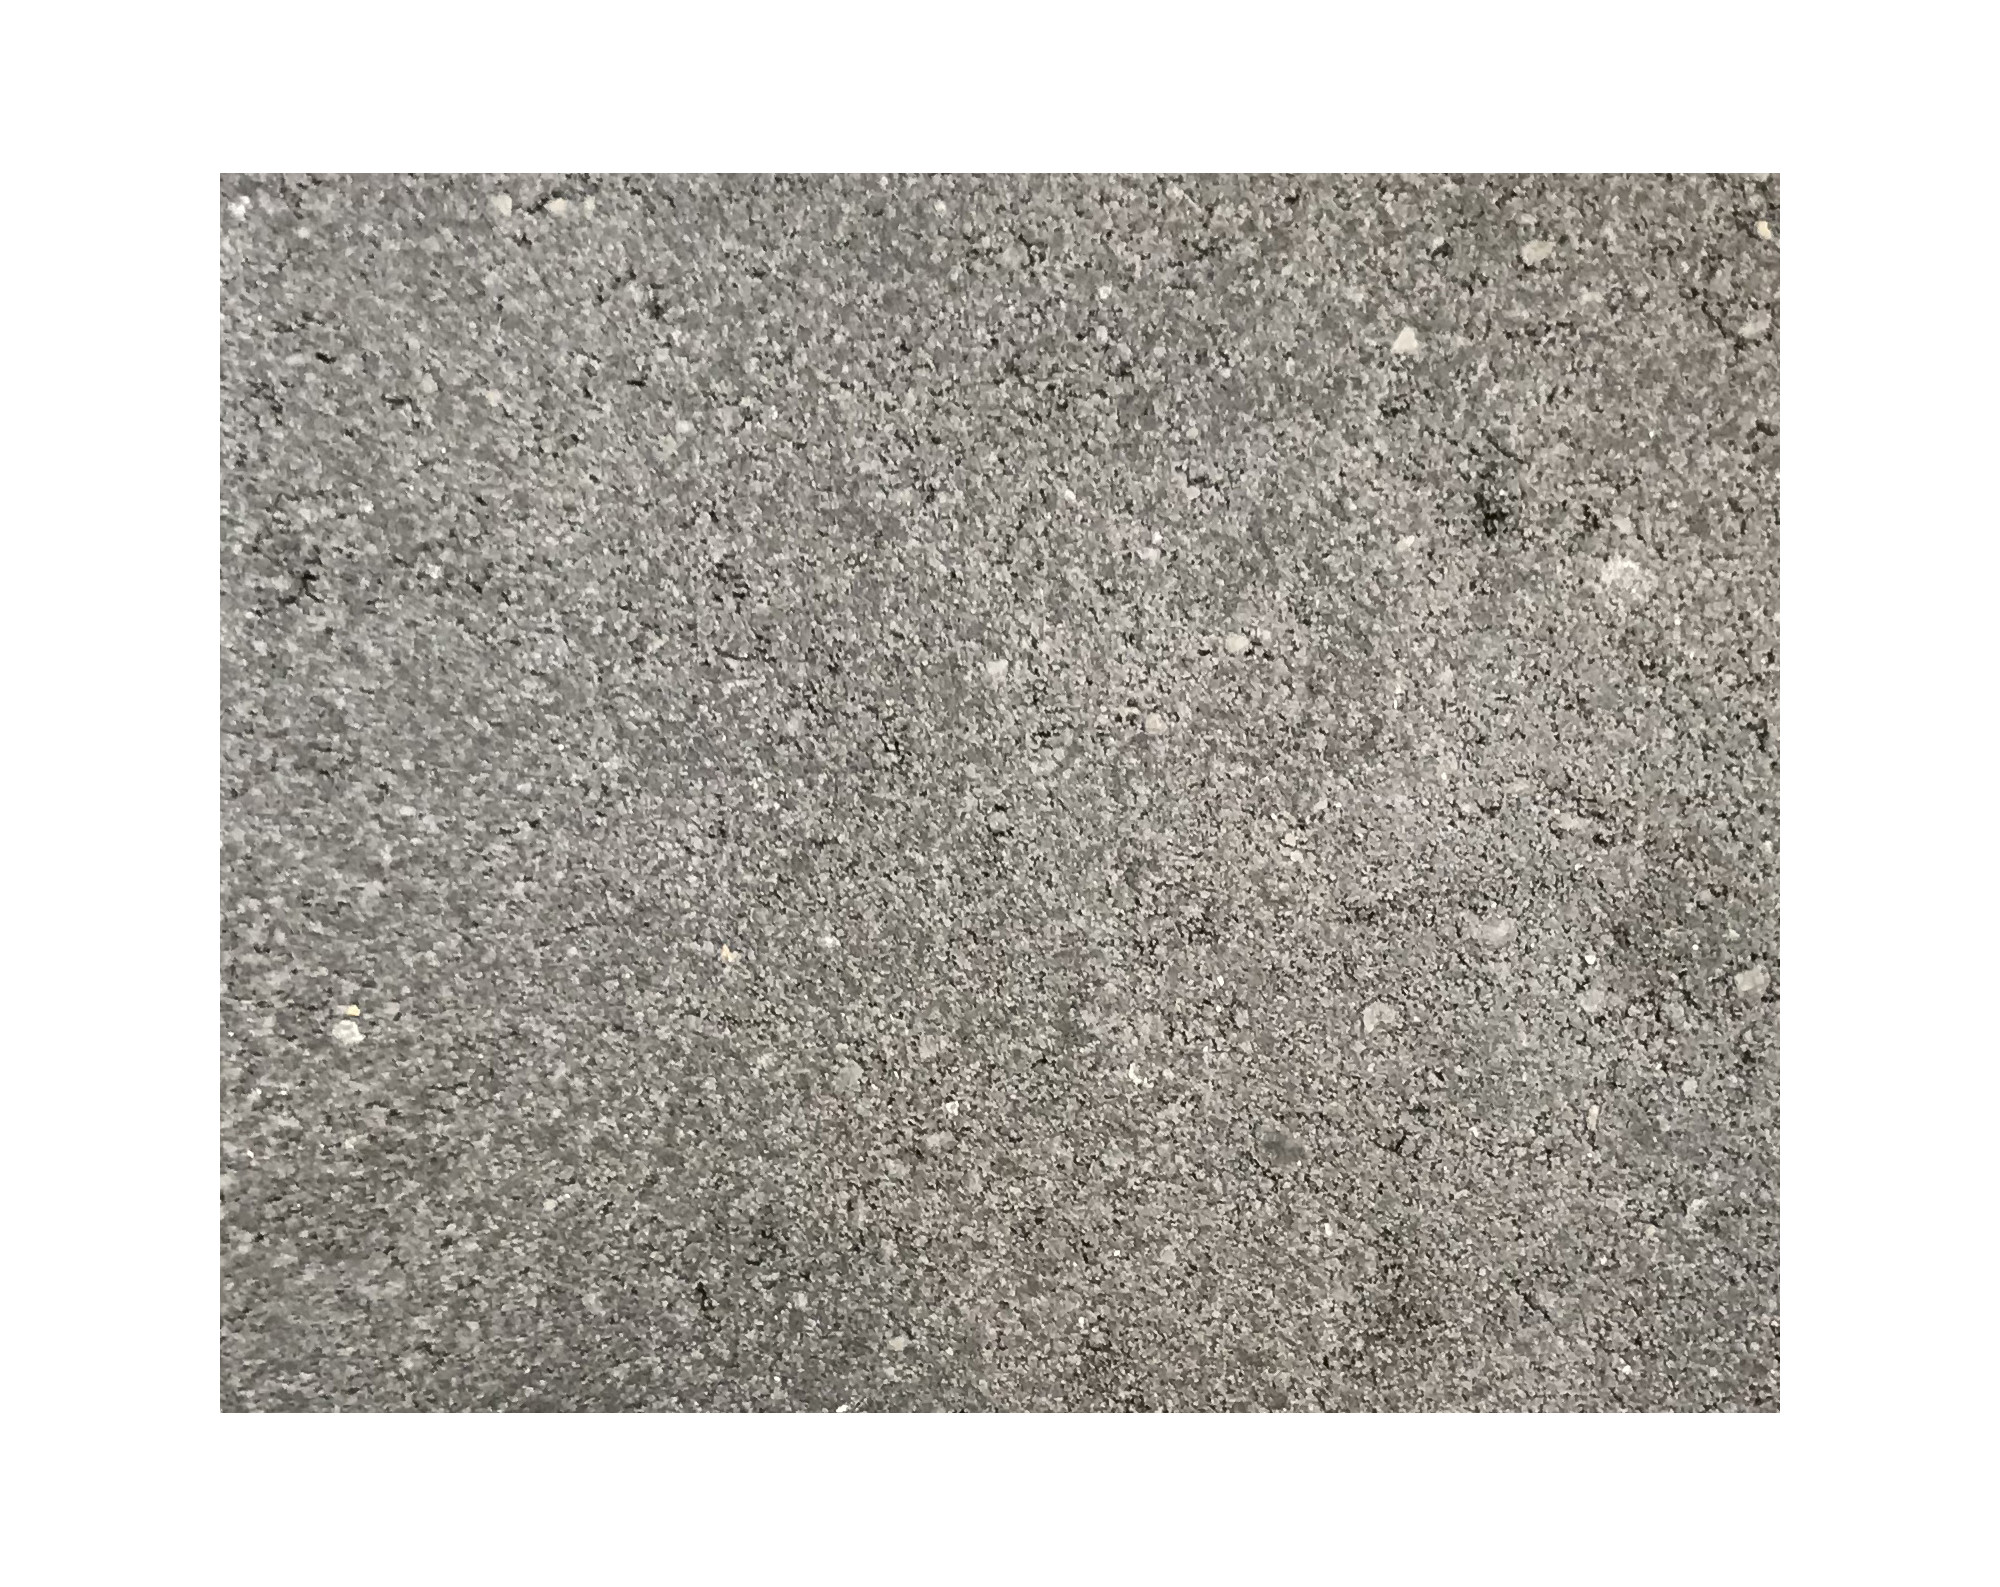 Harmo roc athenset, rustica-serie, ovaal d: 6,00mx11,30m, a.zwart, beton